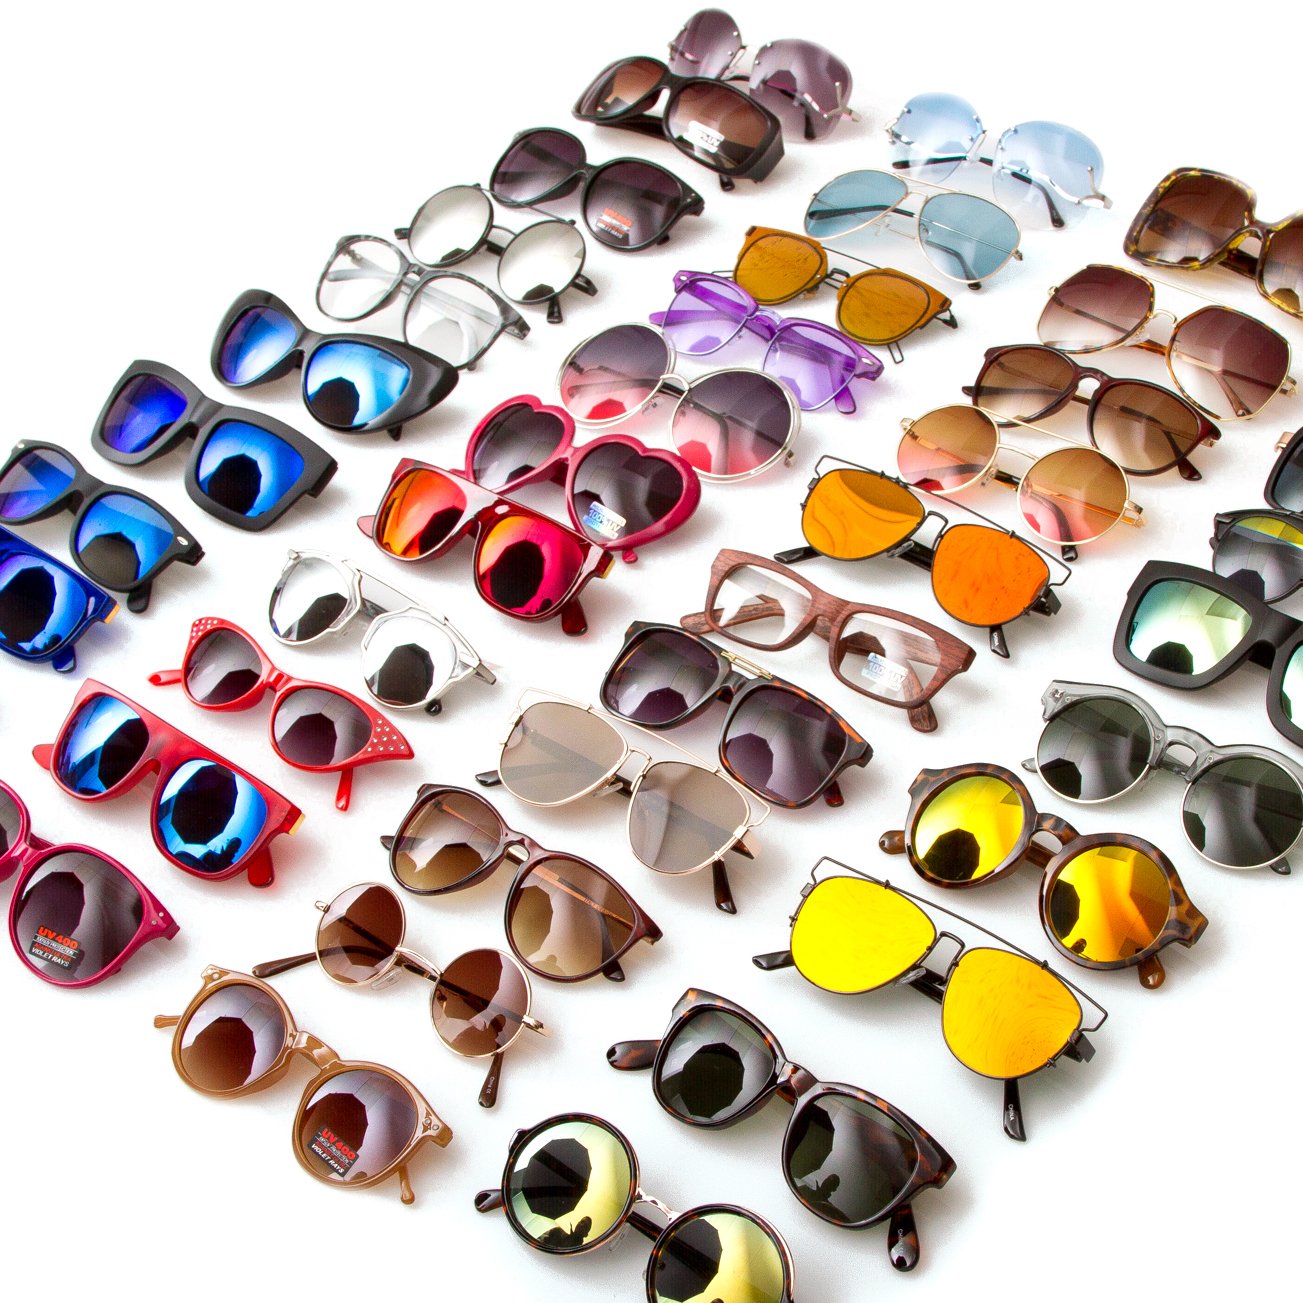 6 PACK) Wholesale Deal MILLIONAIRES Sunglasses Bulk Discounts